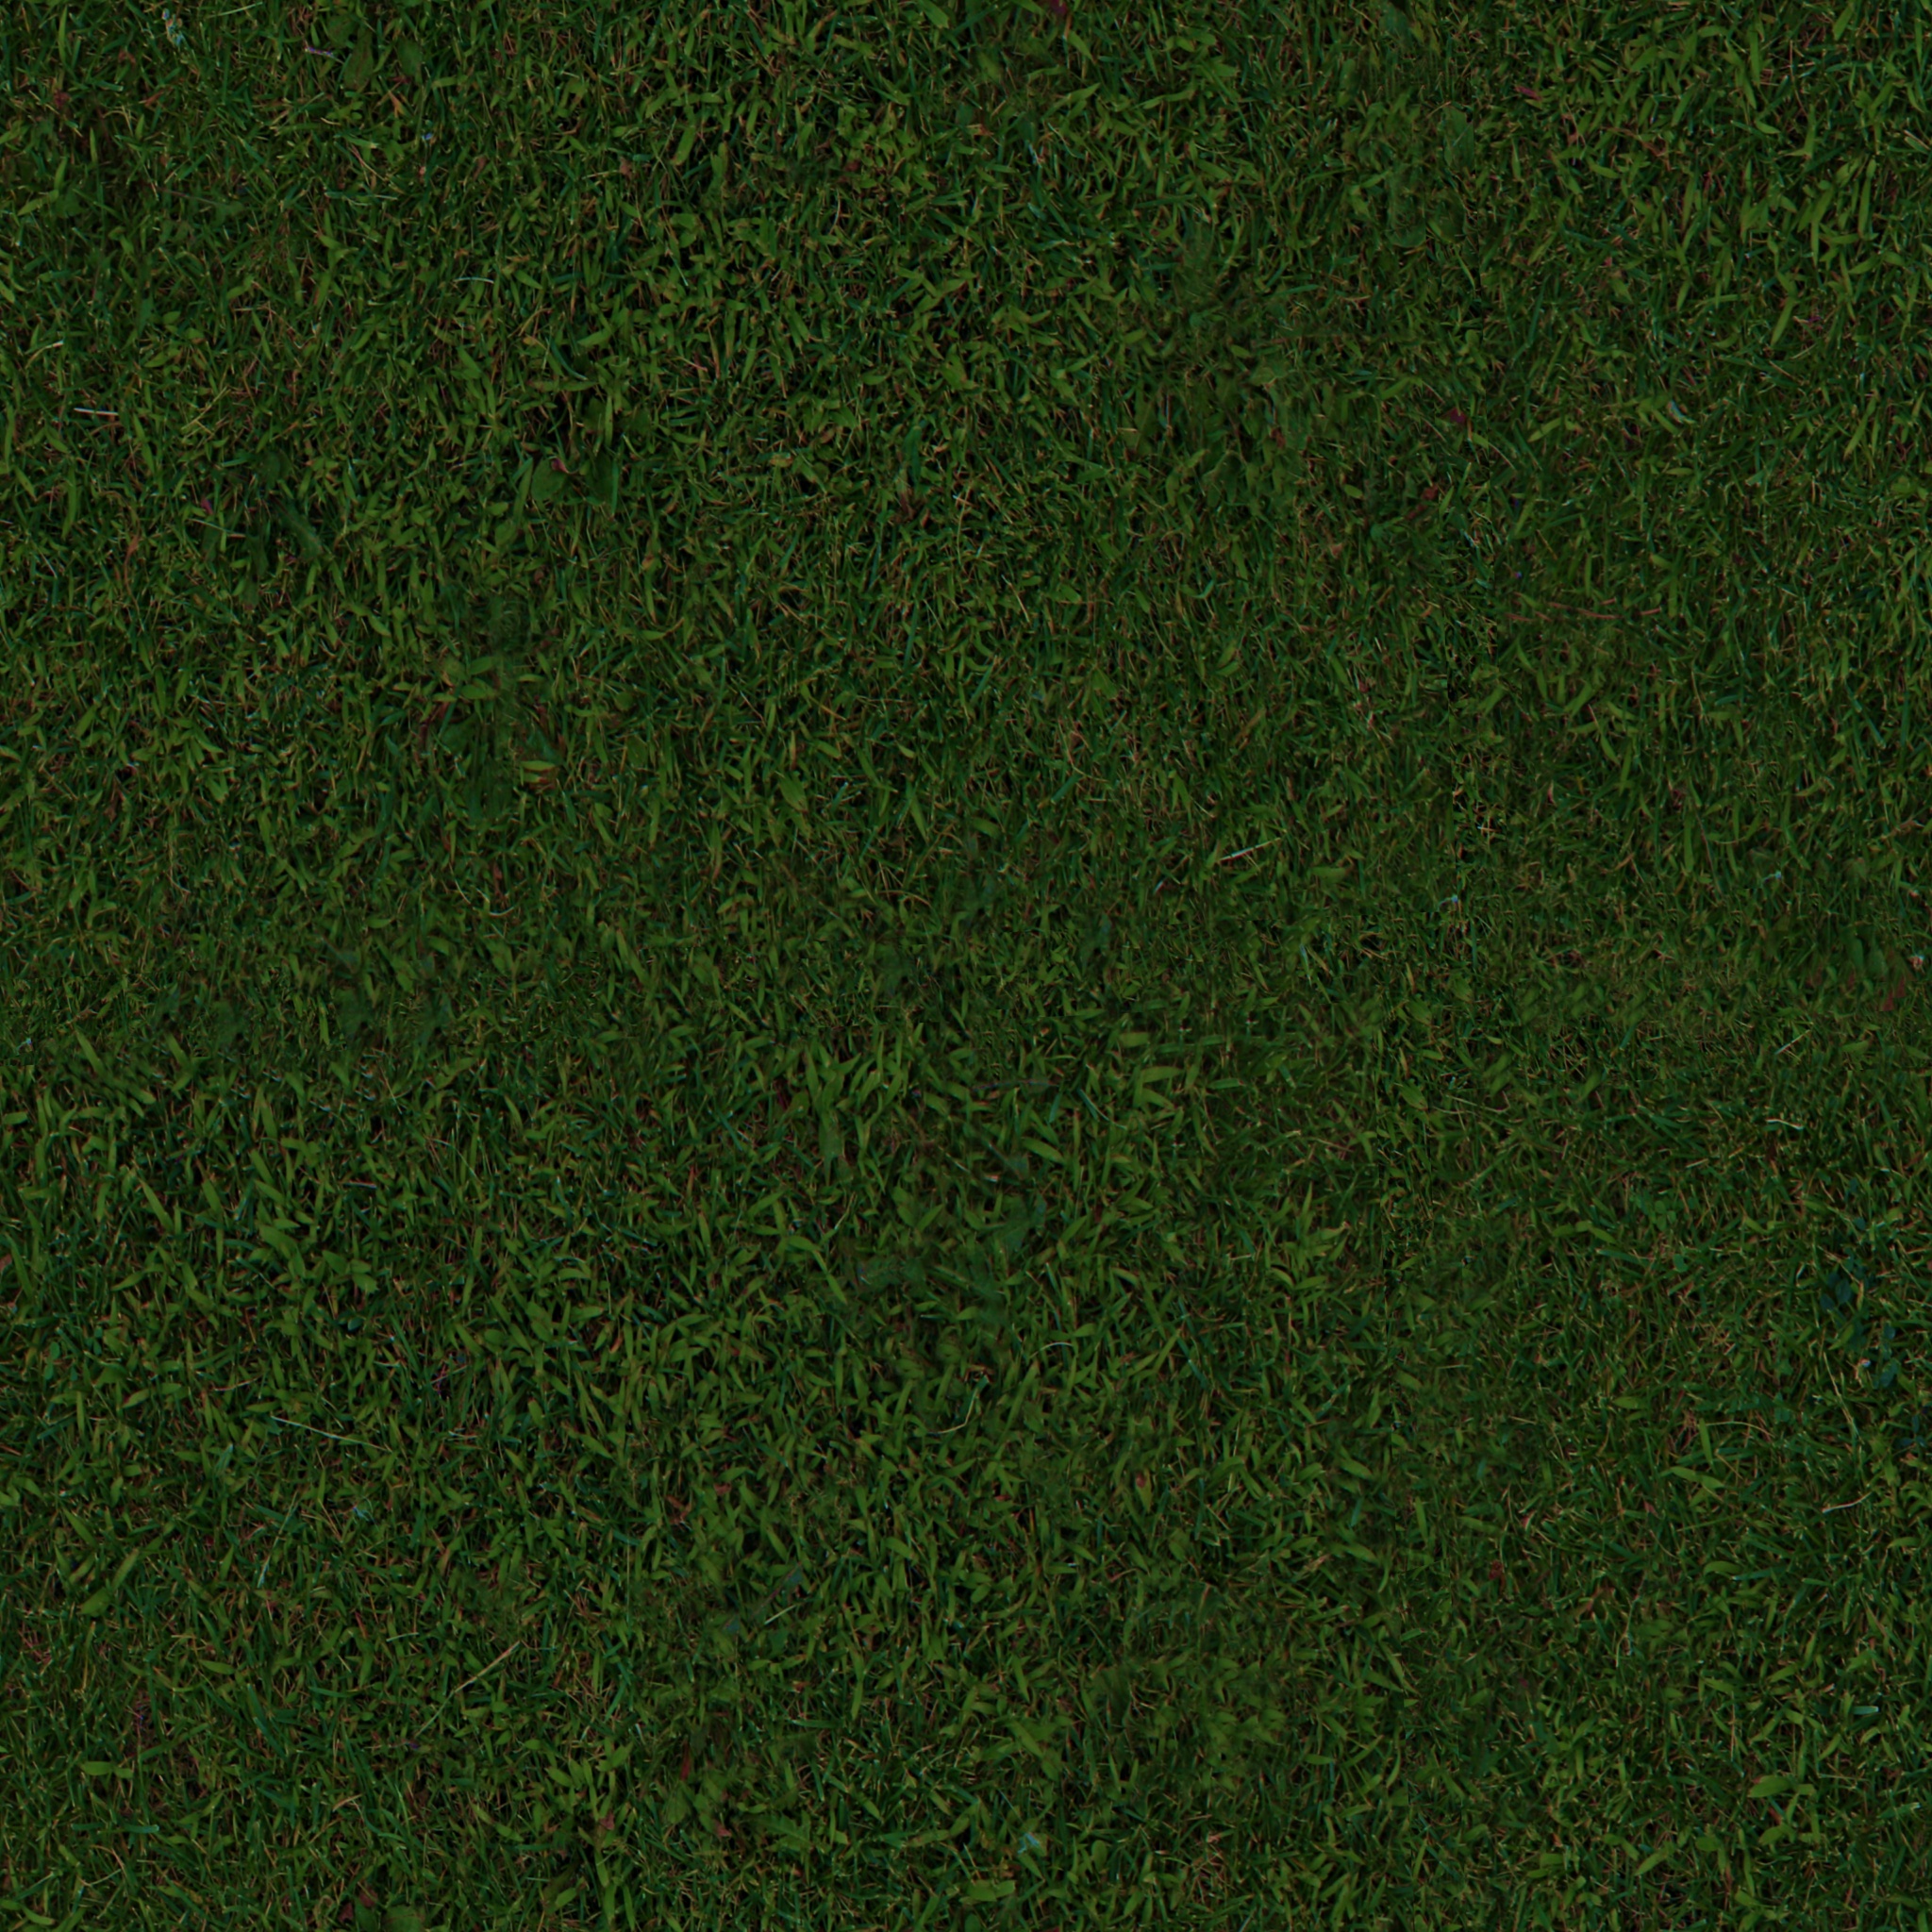 Grass Texture Seamless Hd 